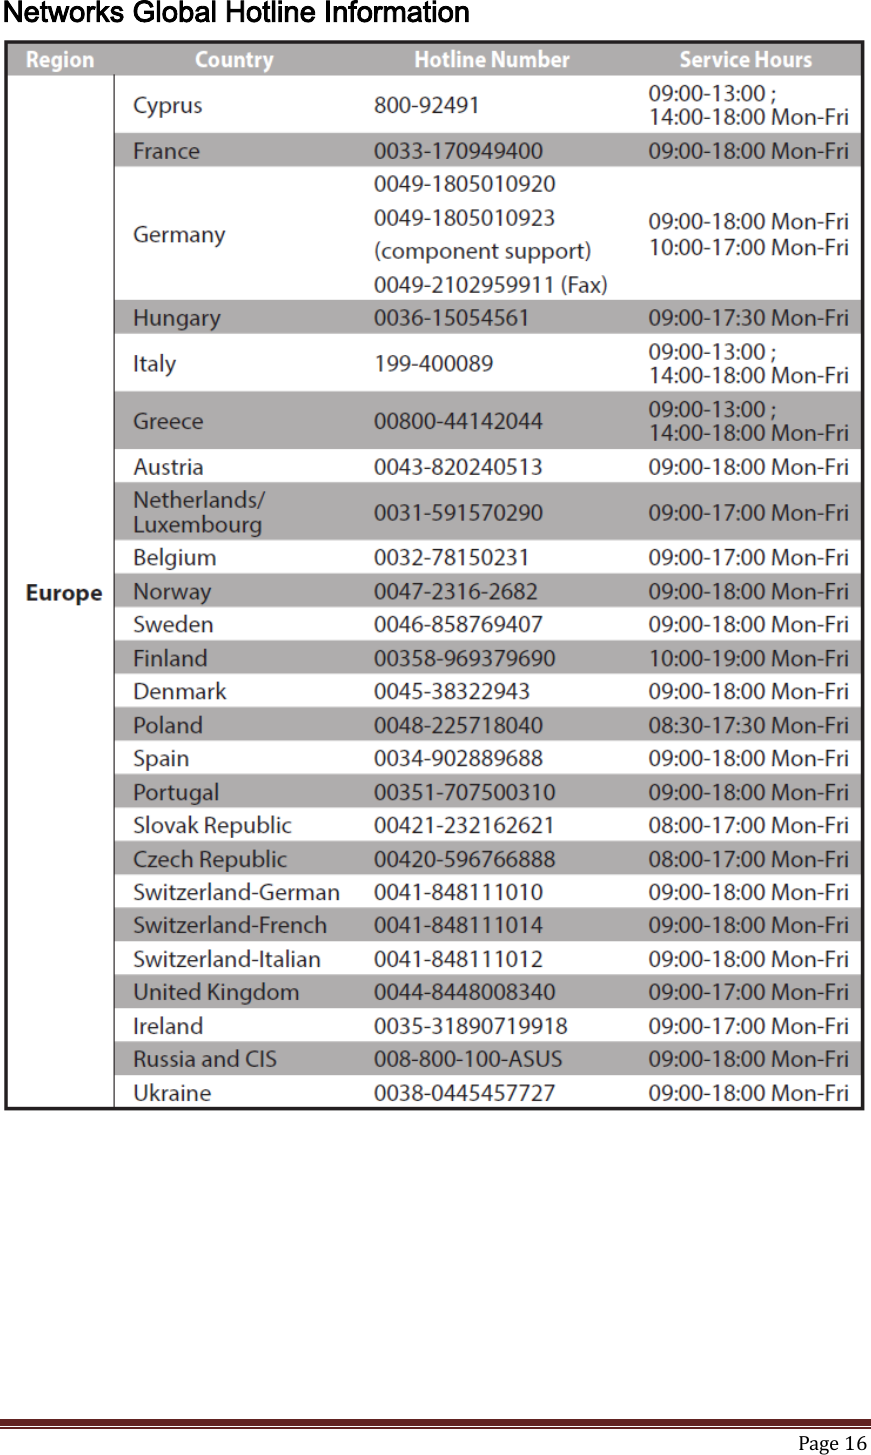   Page 16  Networks Global Hotline Information  